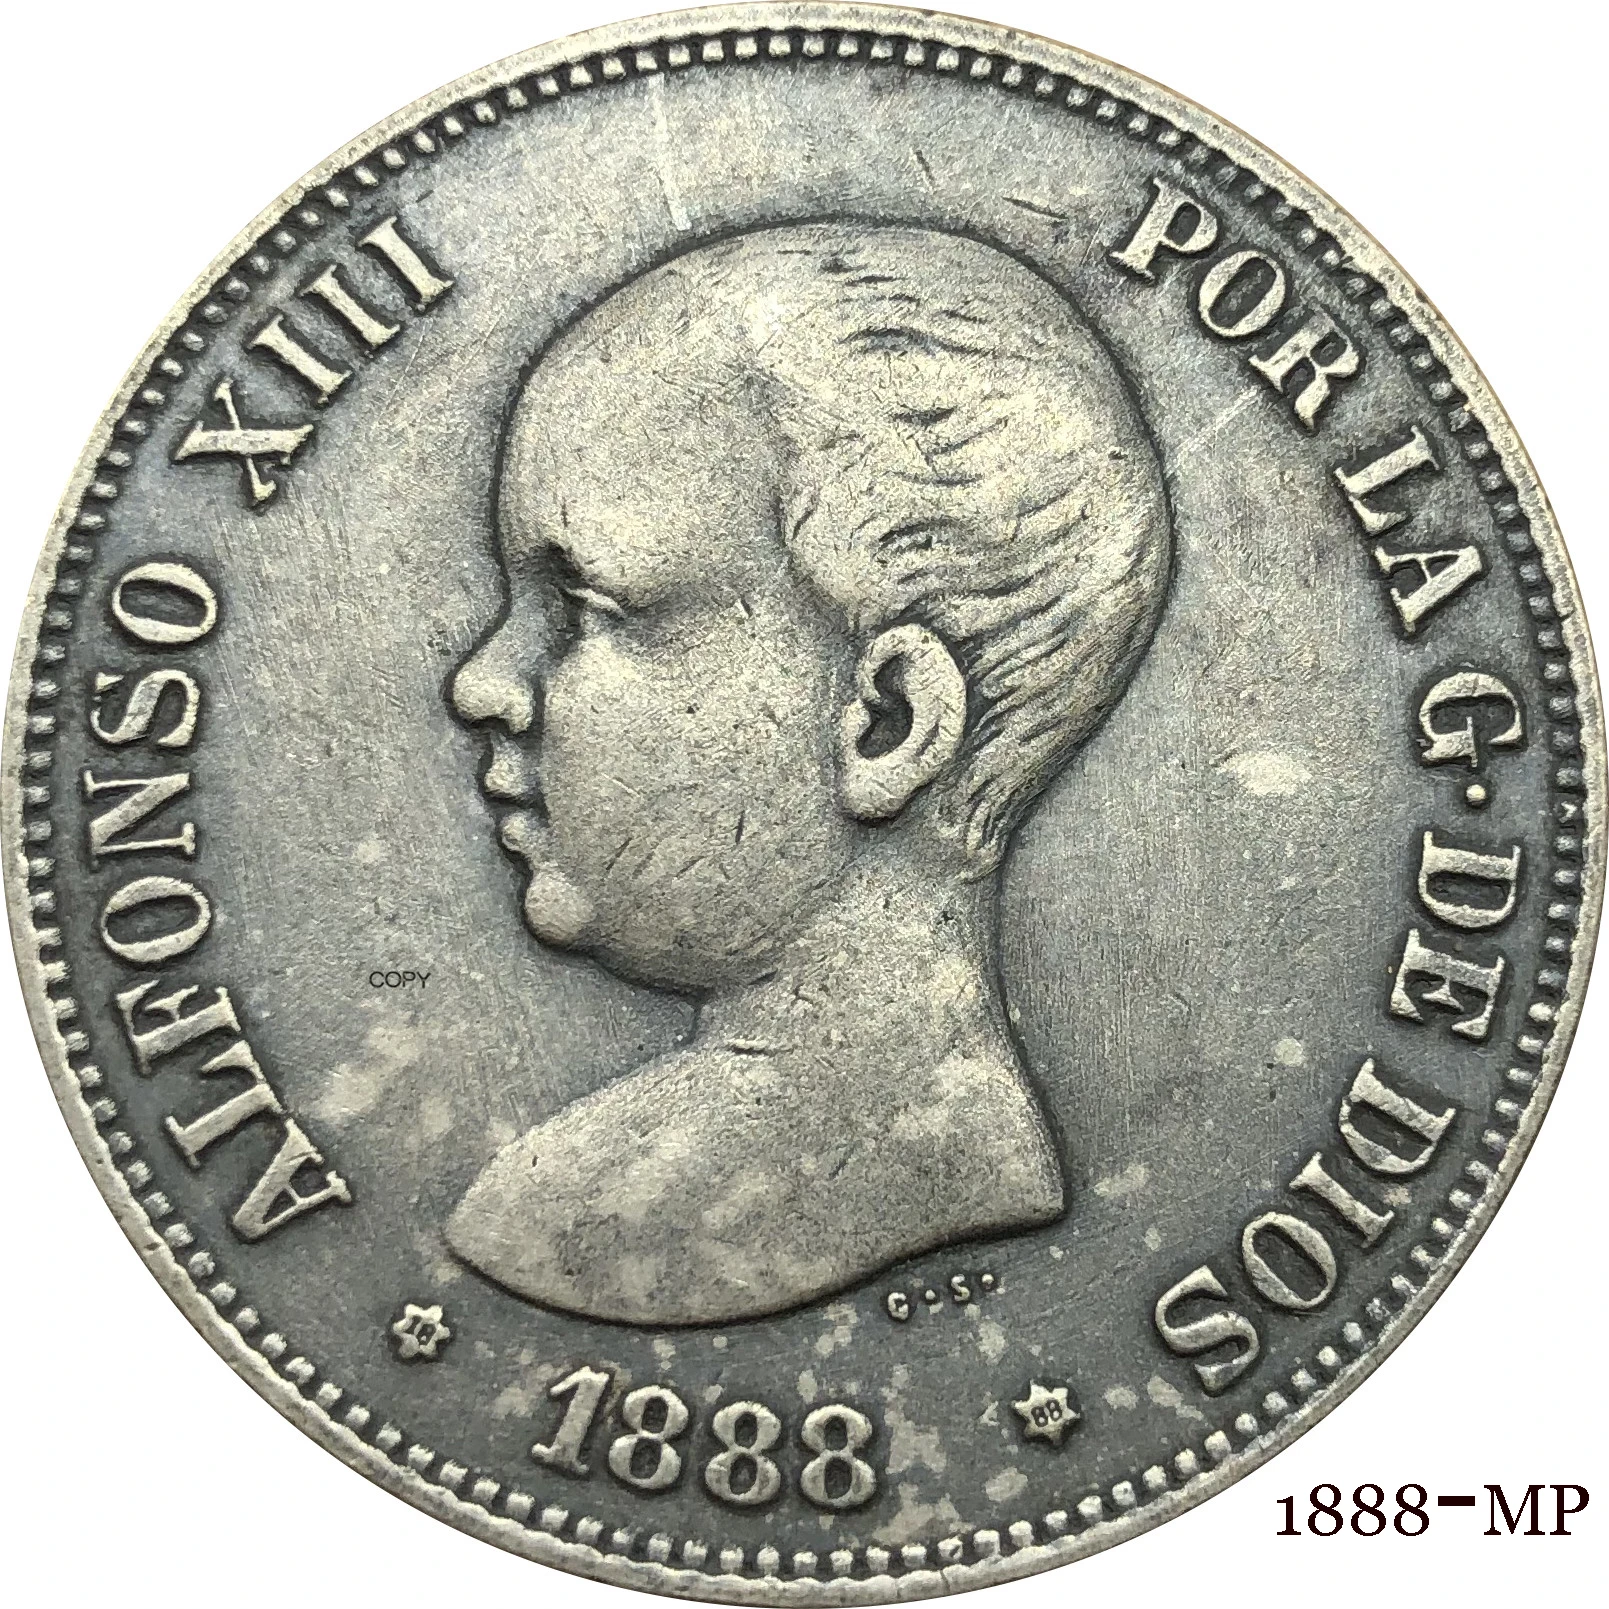 

Испания, 1888 МП, 5 песешек, Альфонсо 13-й портрет, короноамериканский герб оружия с колоннами, Посеребренная копировальная монета